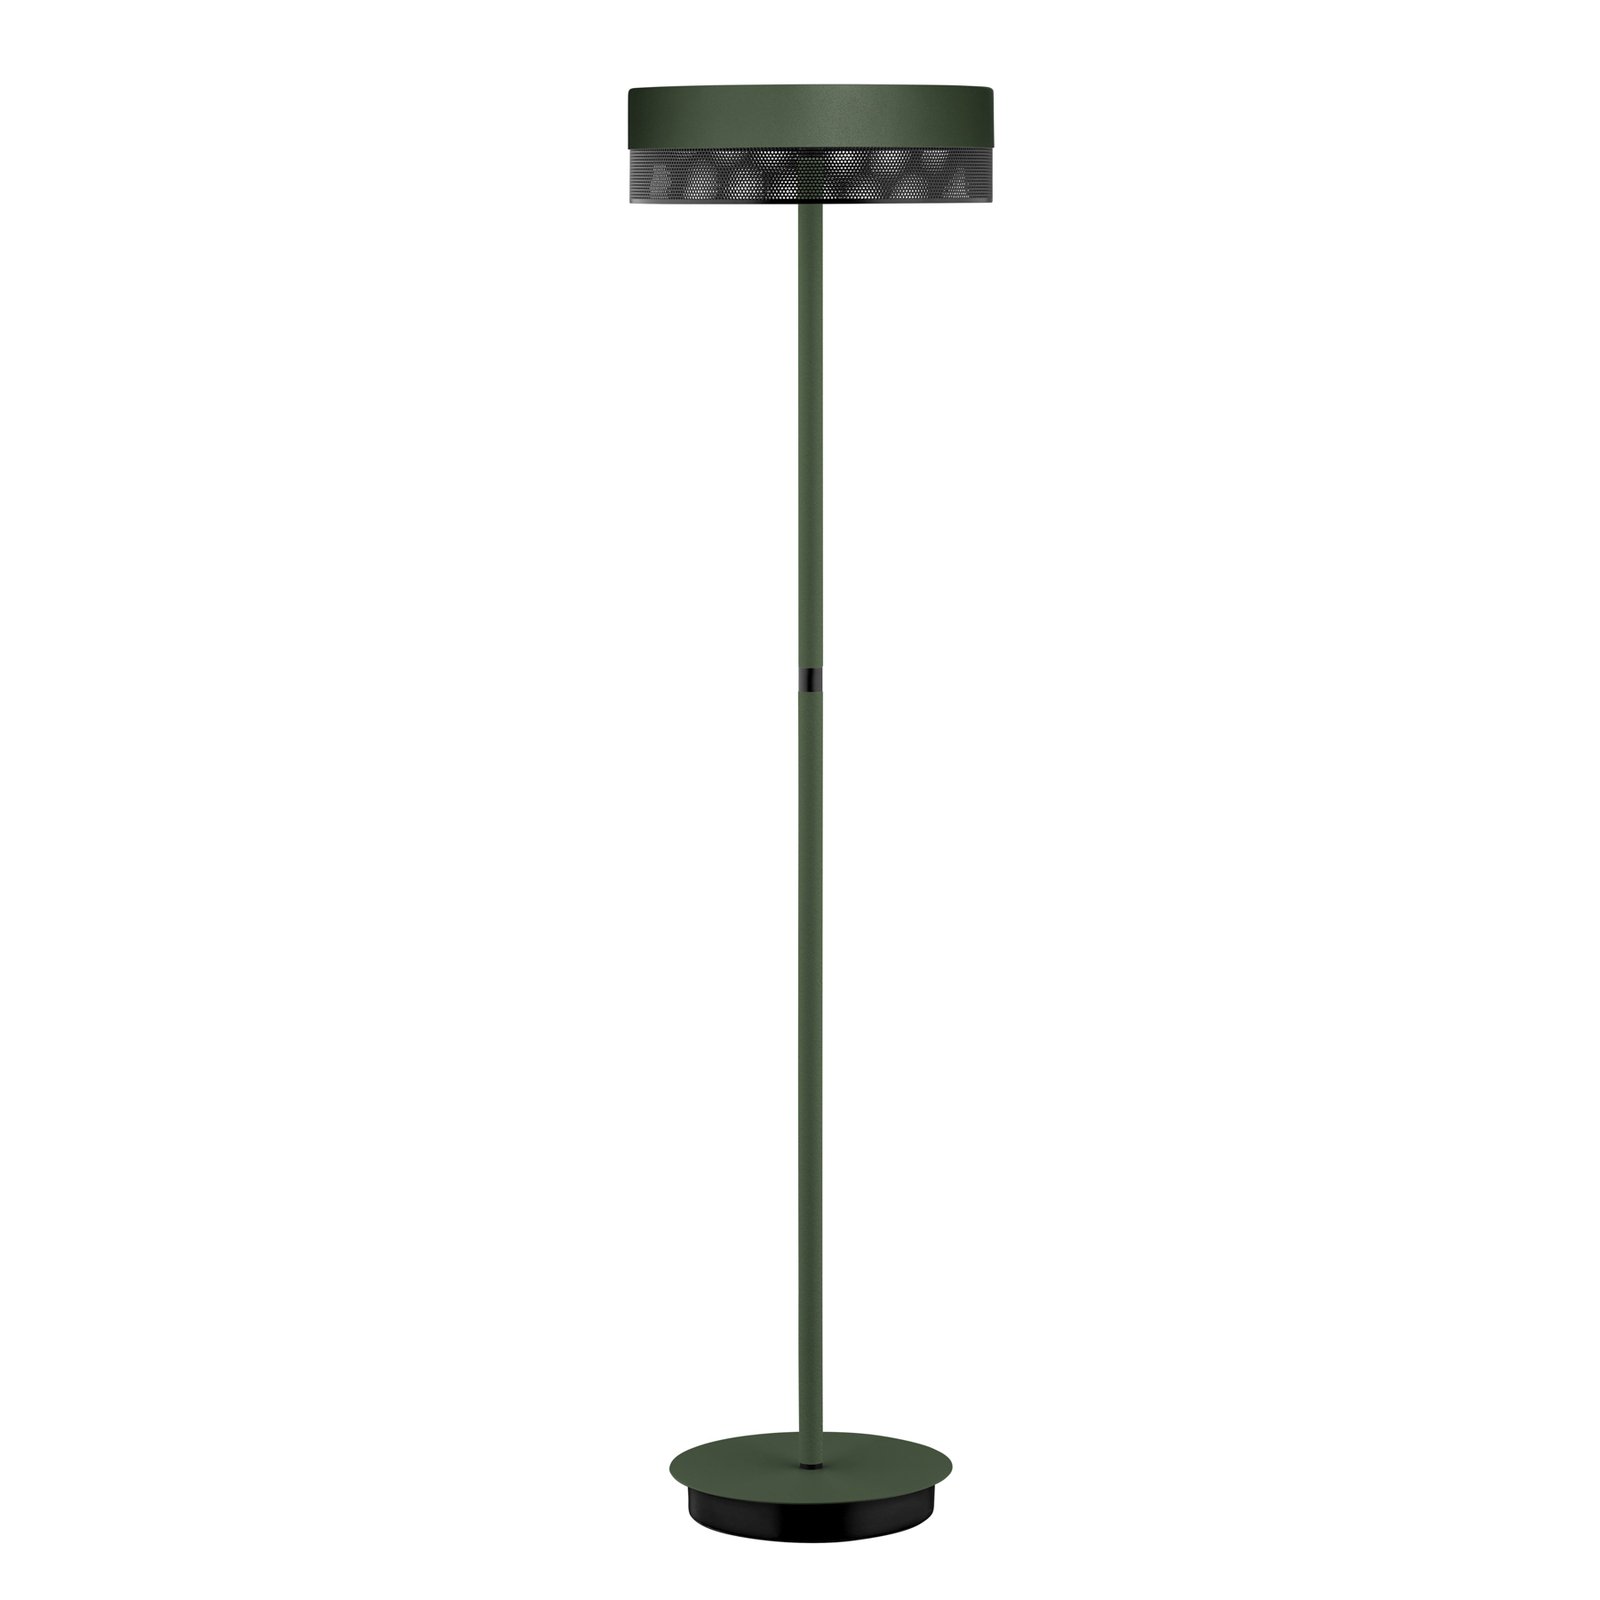 Stojacia LED lampa Mesh so stmievačom, zelená